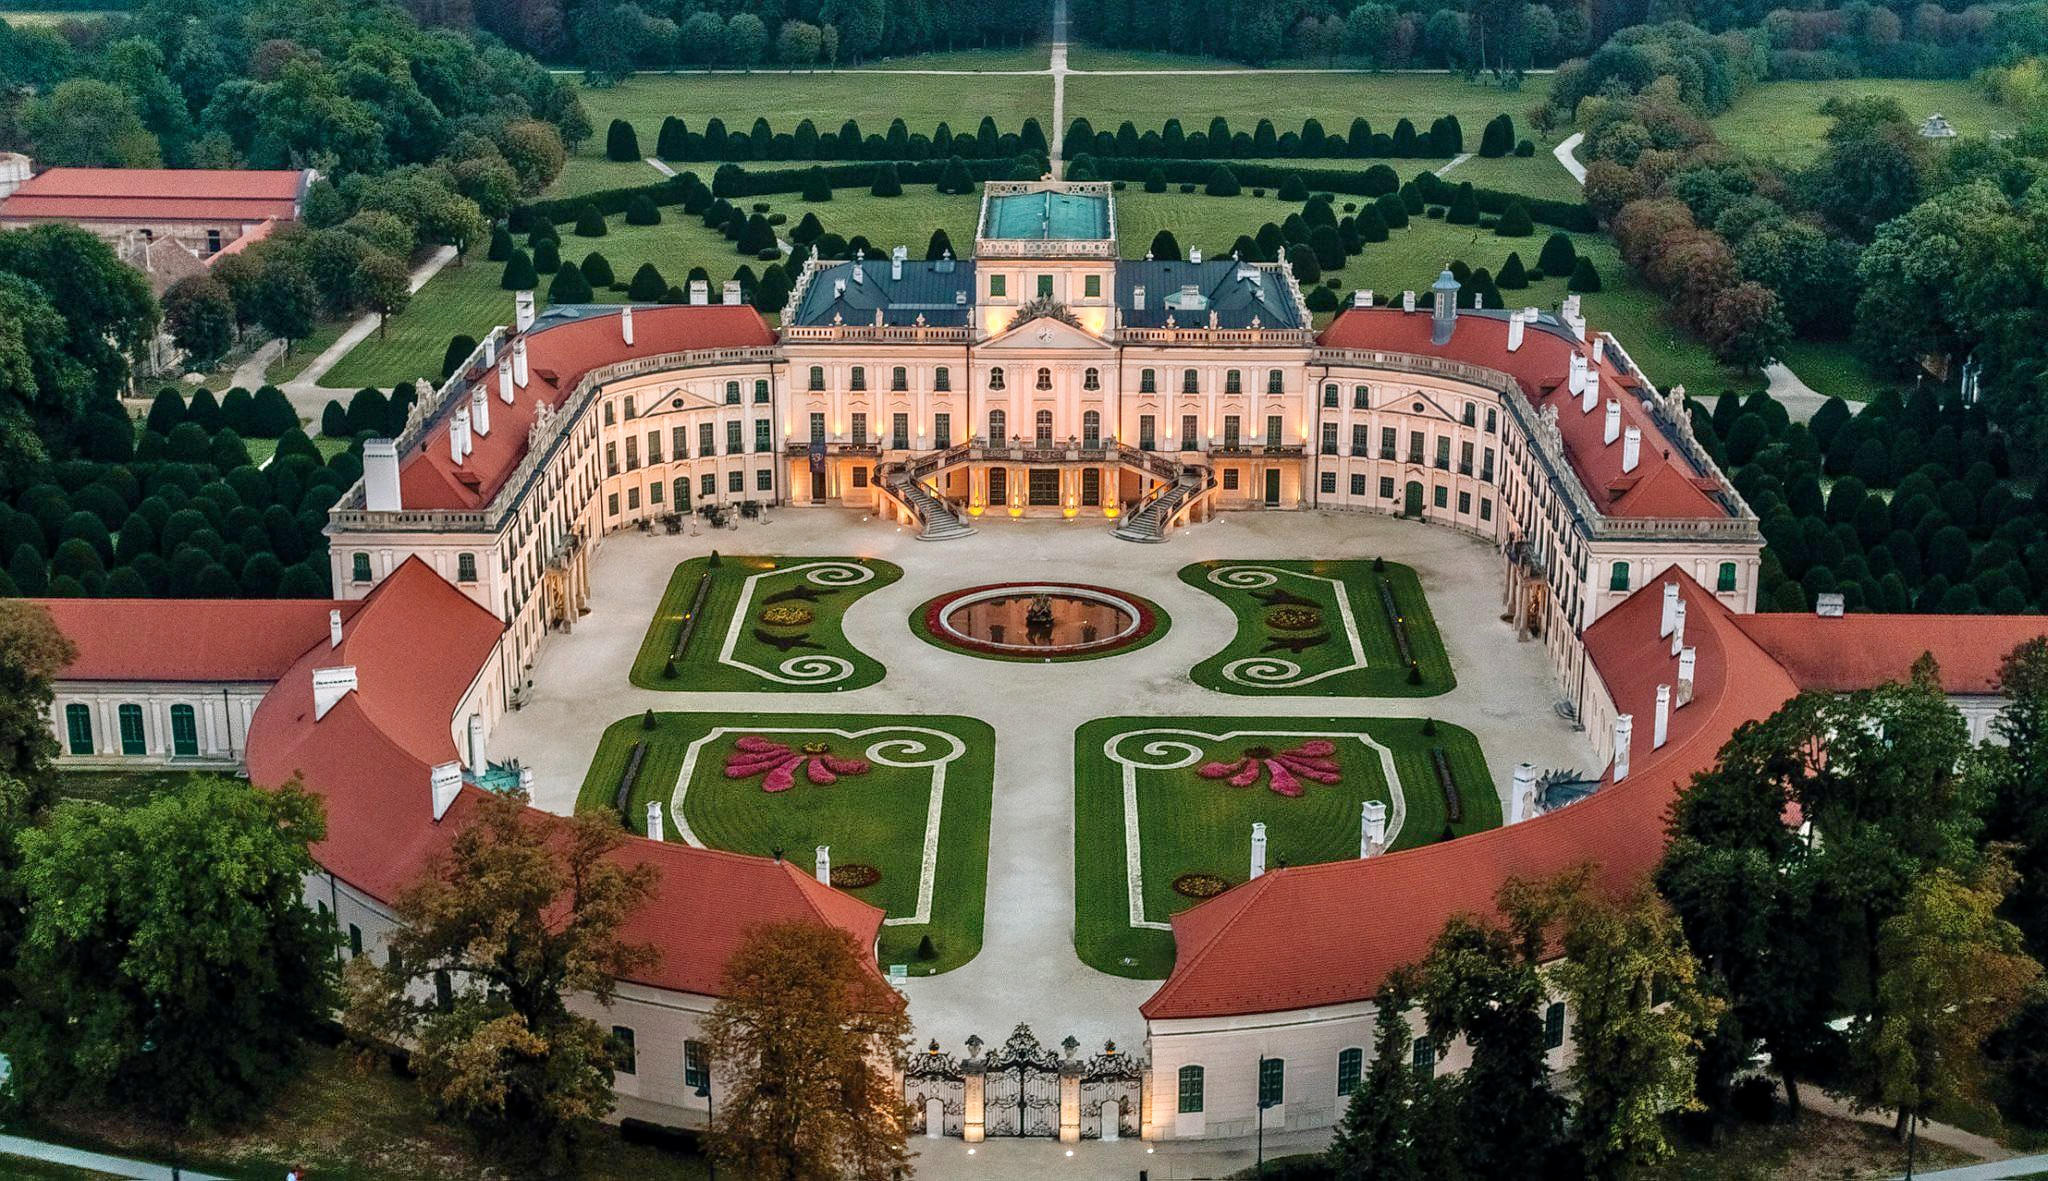 Esterházy Palace Overview